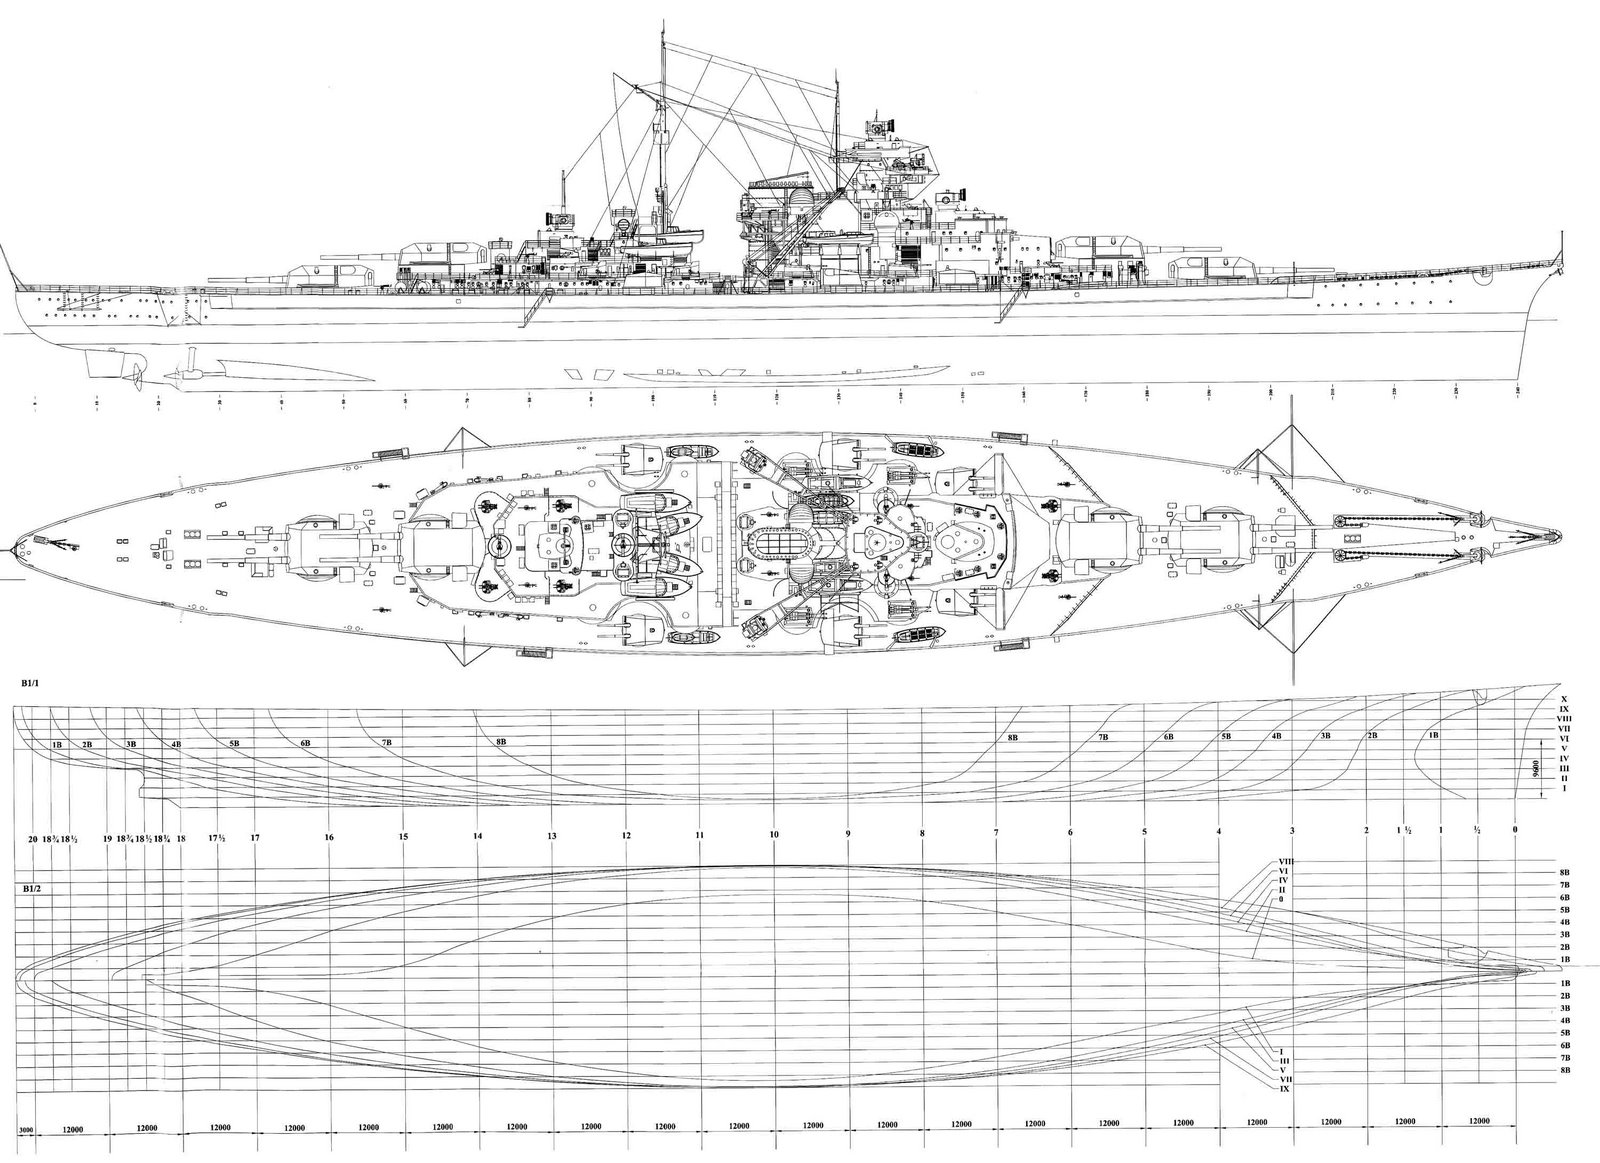 Bismarck's design schematics